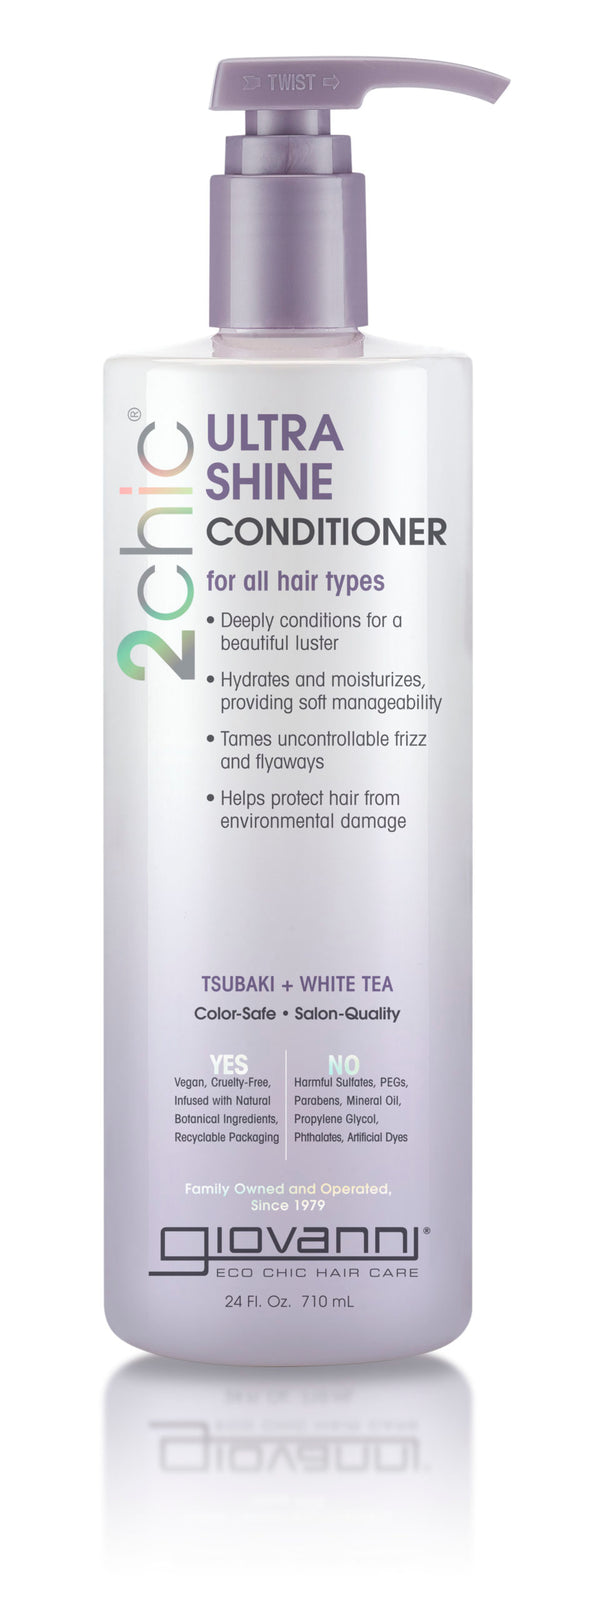 Giovanni Cosmetics 2chic - Ultra-Shine Conditioner with Tsubaki & White Tea